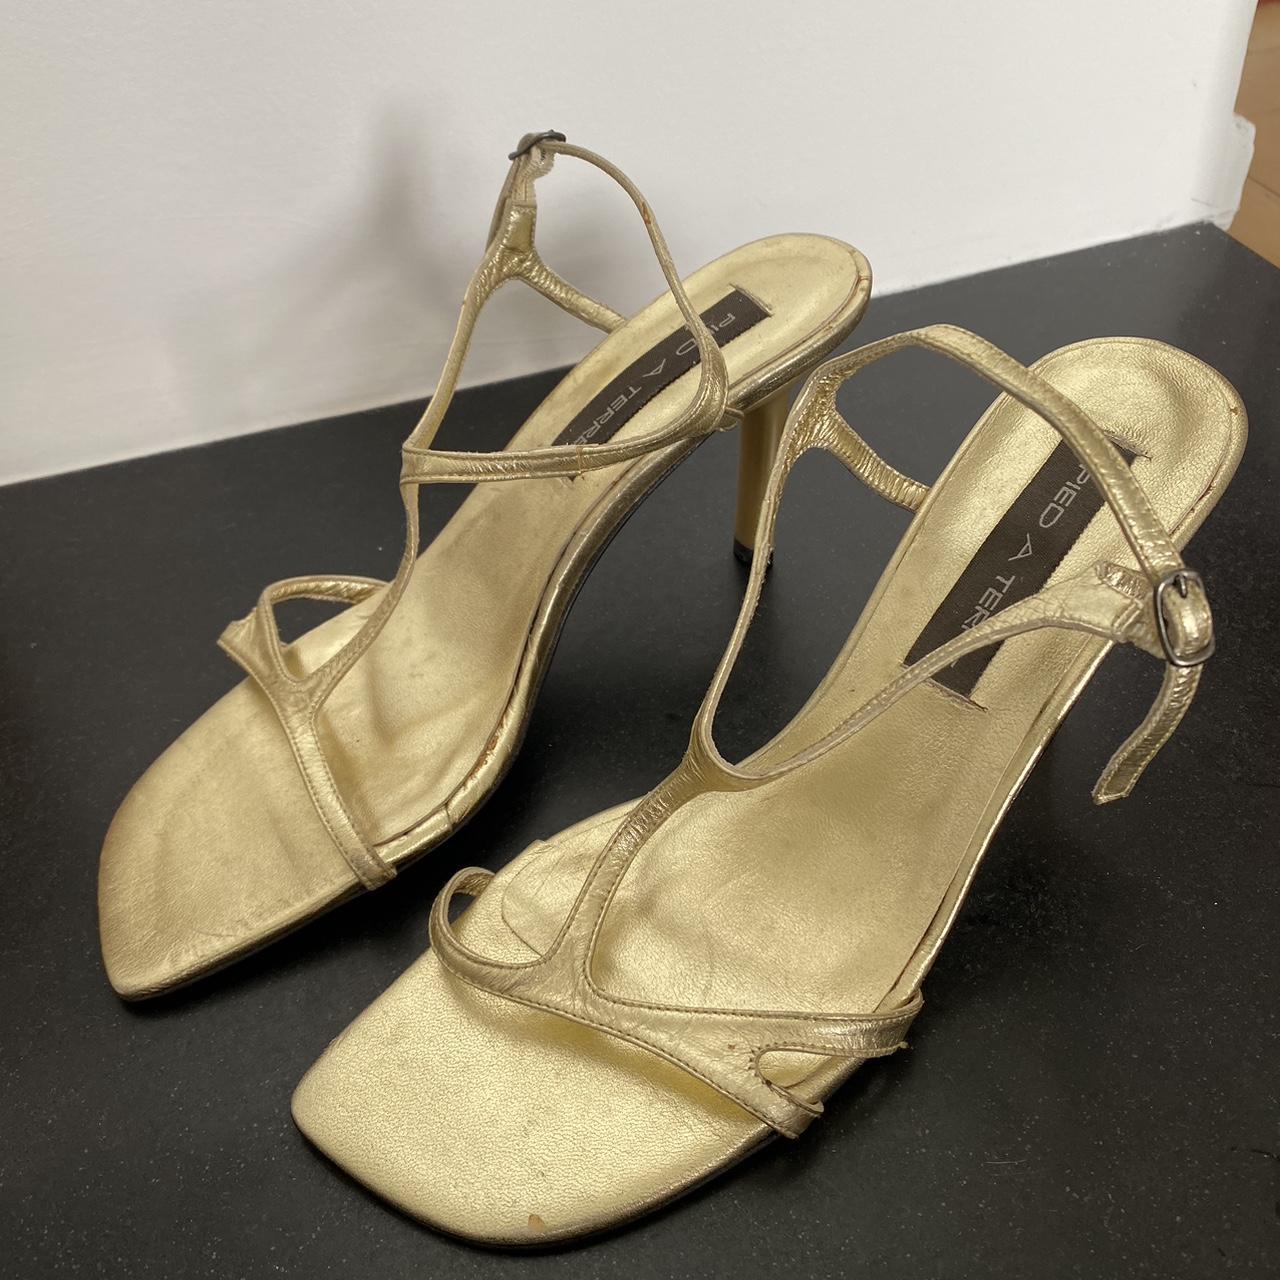 Vintage Pied a Terre sandals only worn once inside.... - Depop